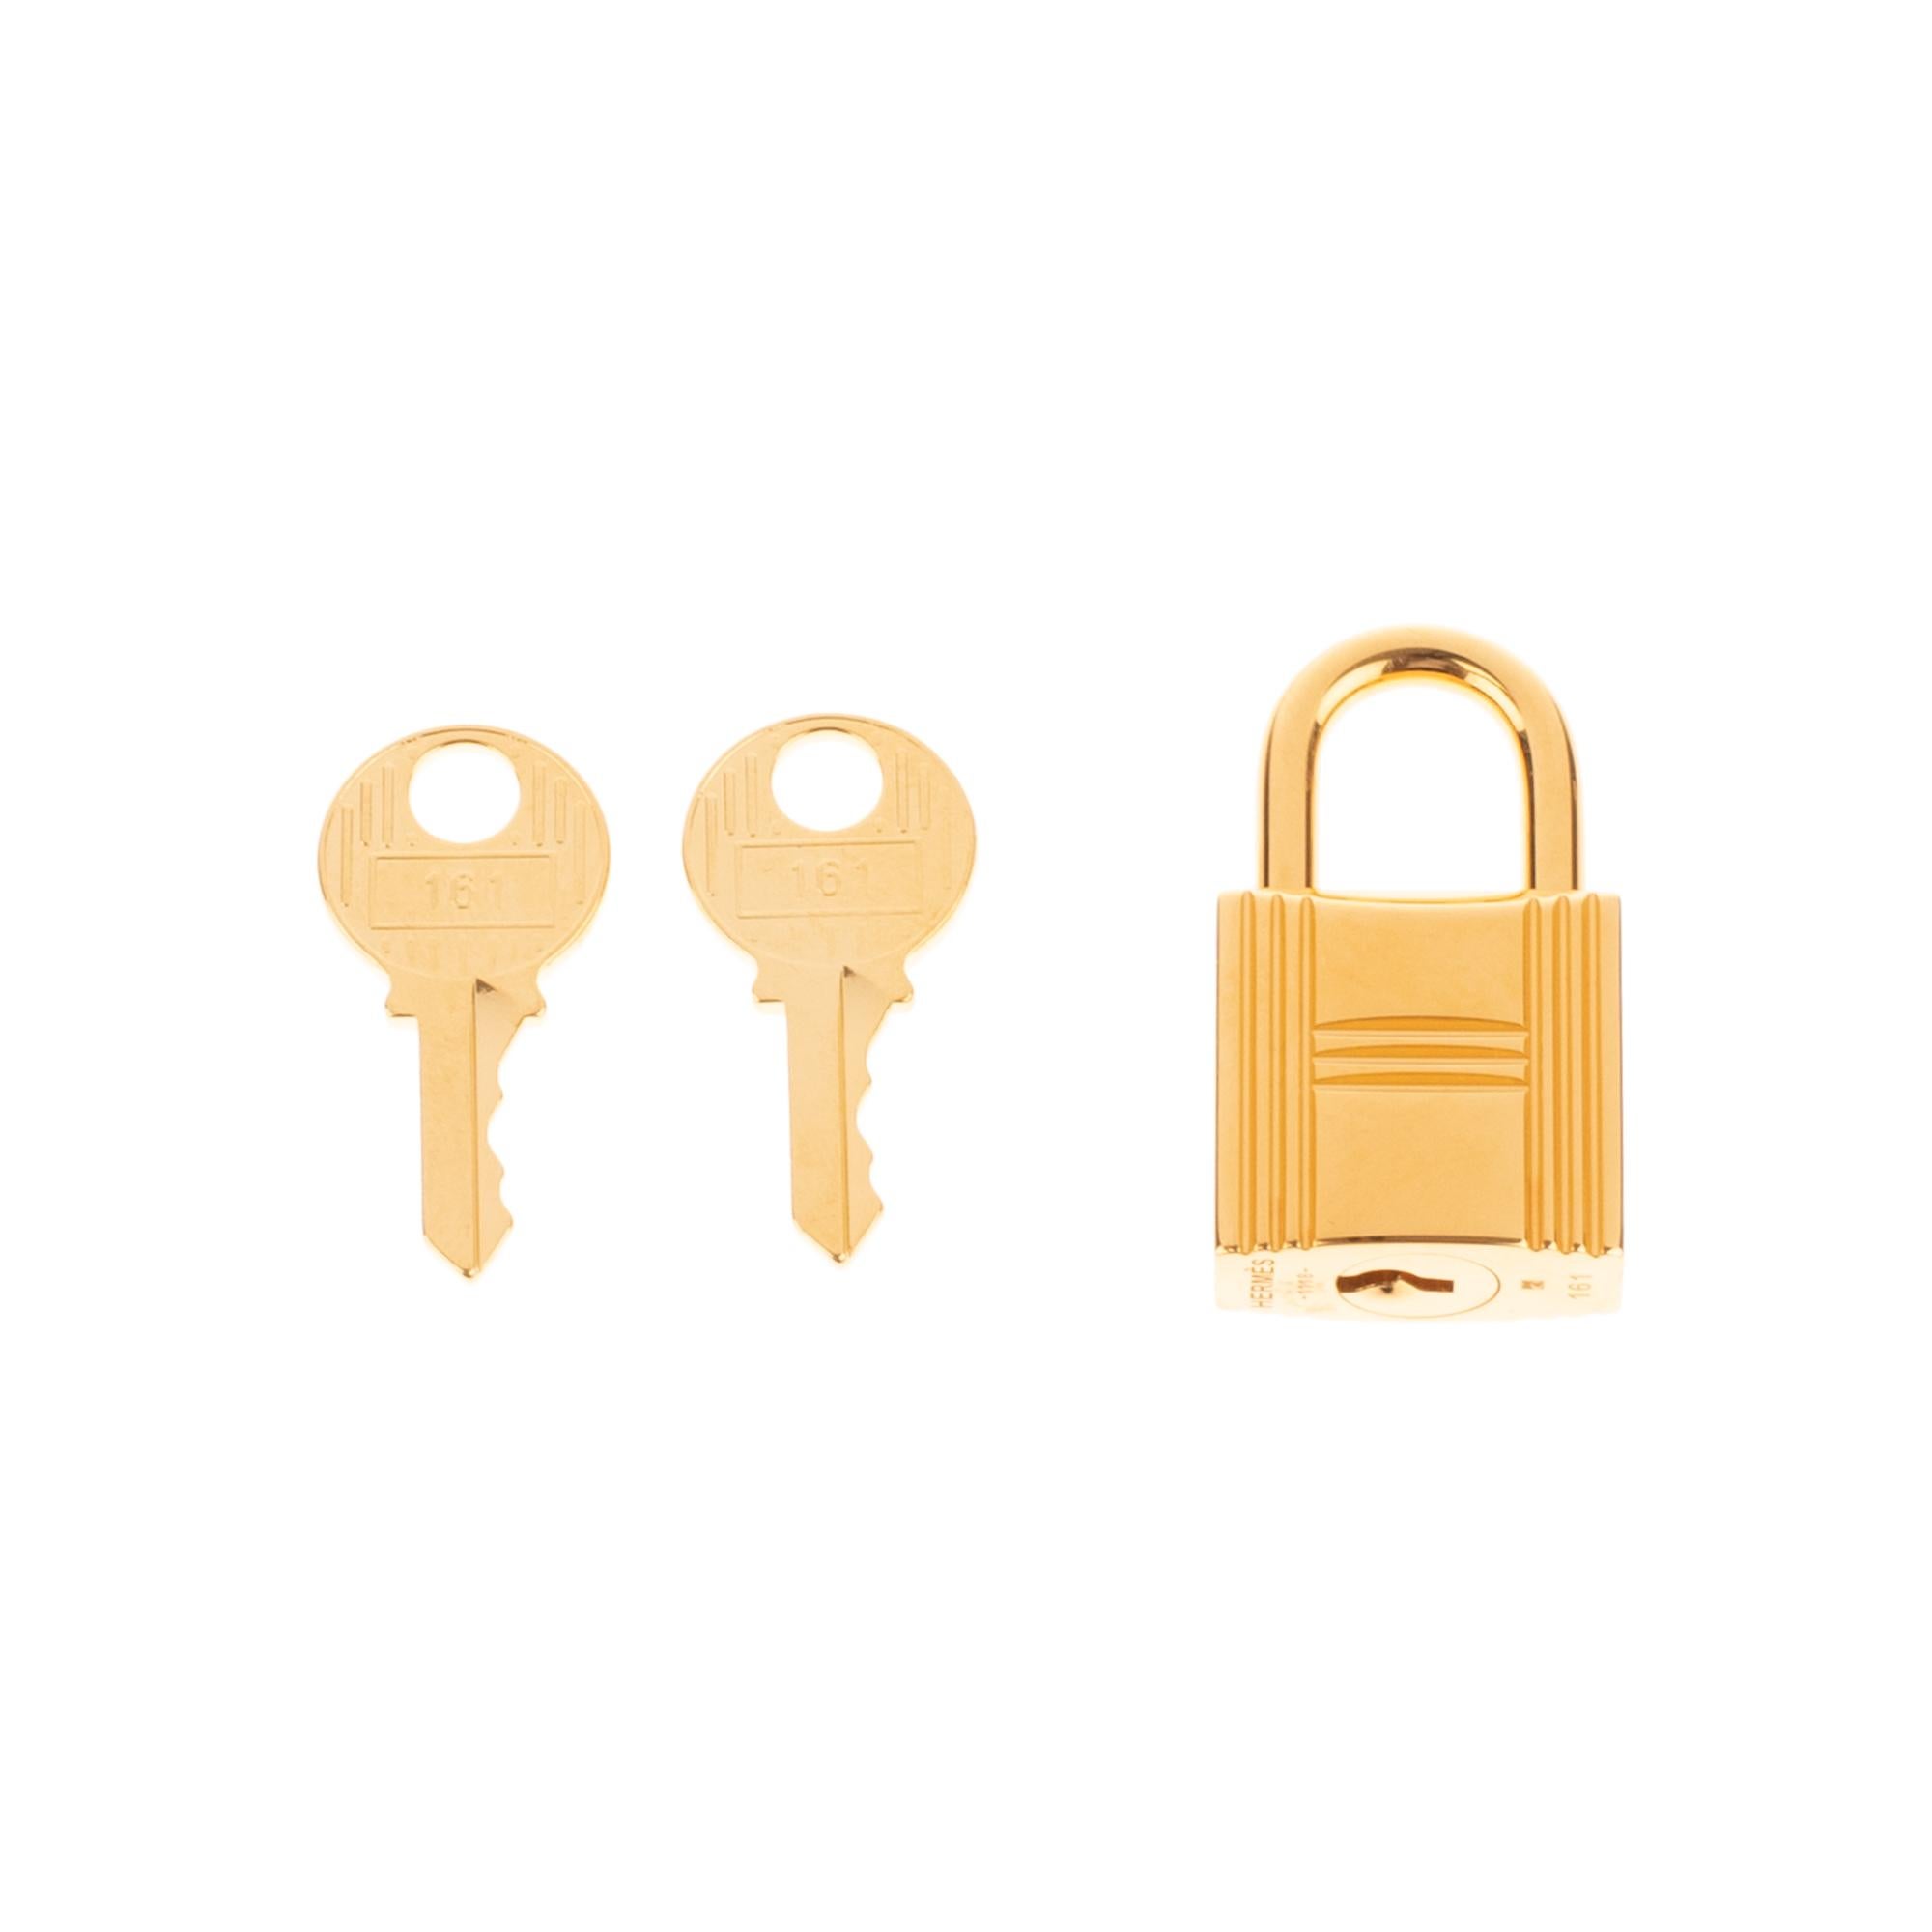 Cadenas en métal doré Hermès pour sacs Birkin et kelly en métal doré avec deux clés
Signature : Hermès
Dimensions :  3,5 x 2 x 2 cm ( 1+2=8])

Etat neuf sous plastique avec 2 clés